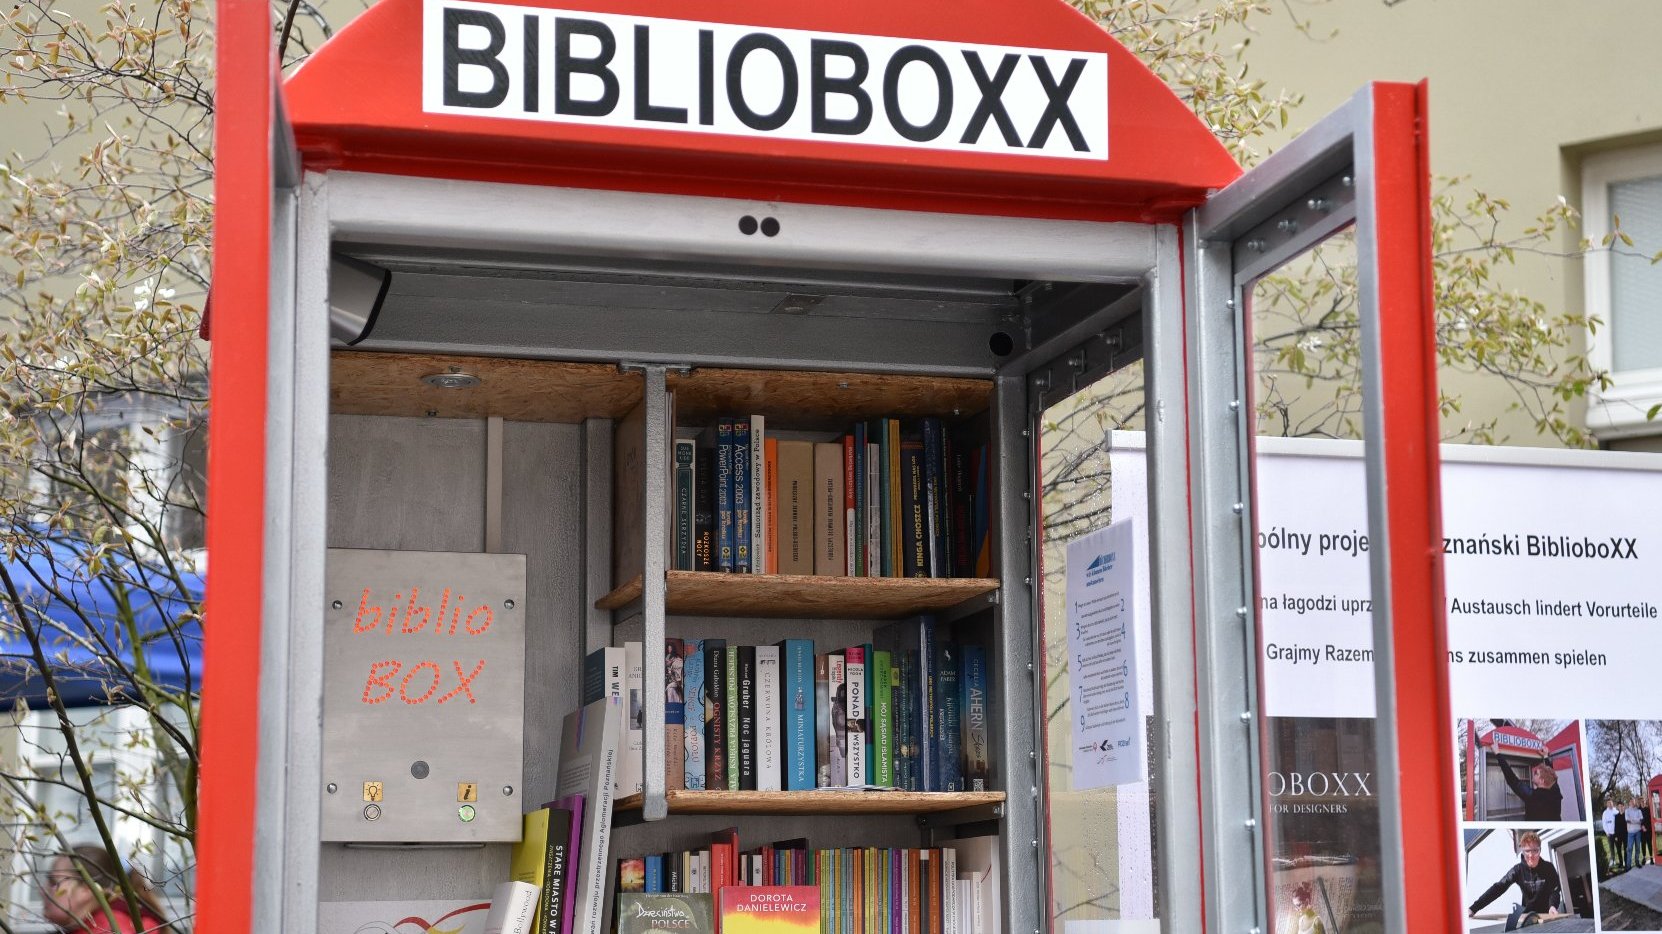 Galeria zdjęć przedstawia BiblioboXX oraz ludzi, którzy uczestniczyli w jego otwarciu.